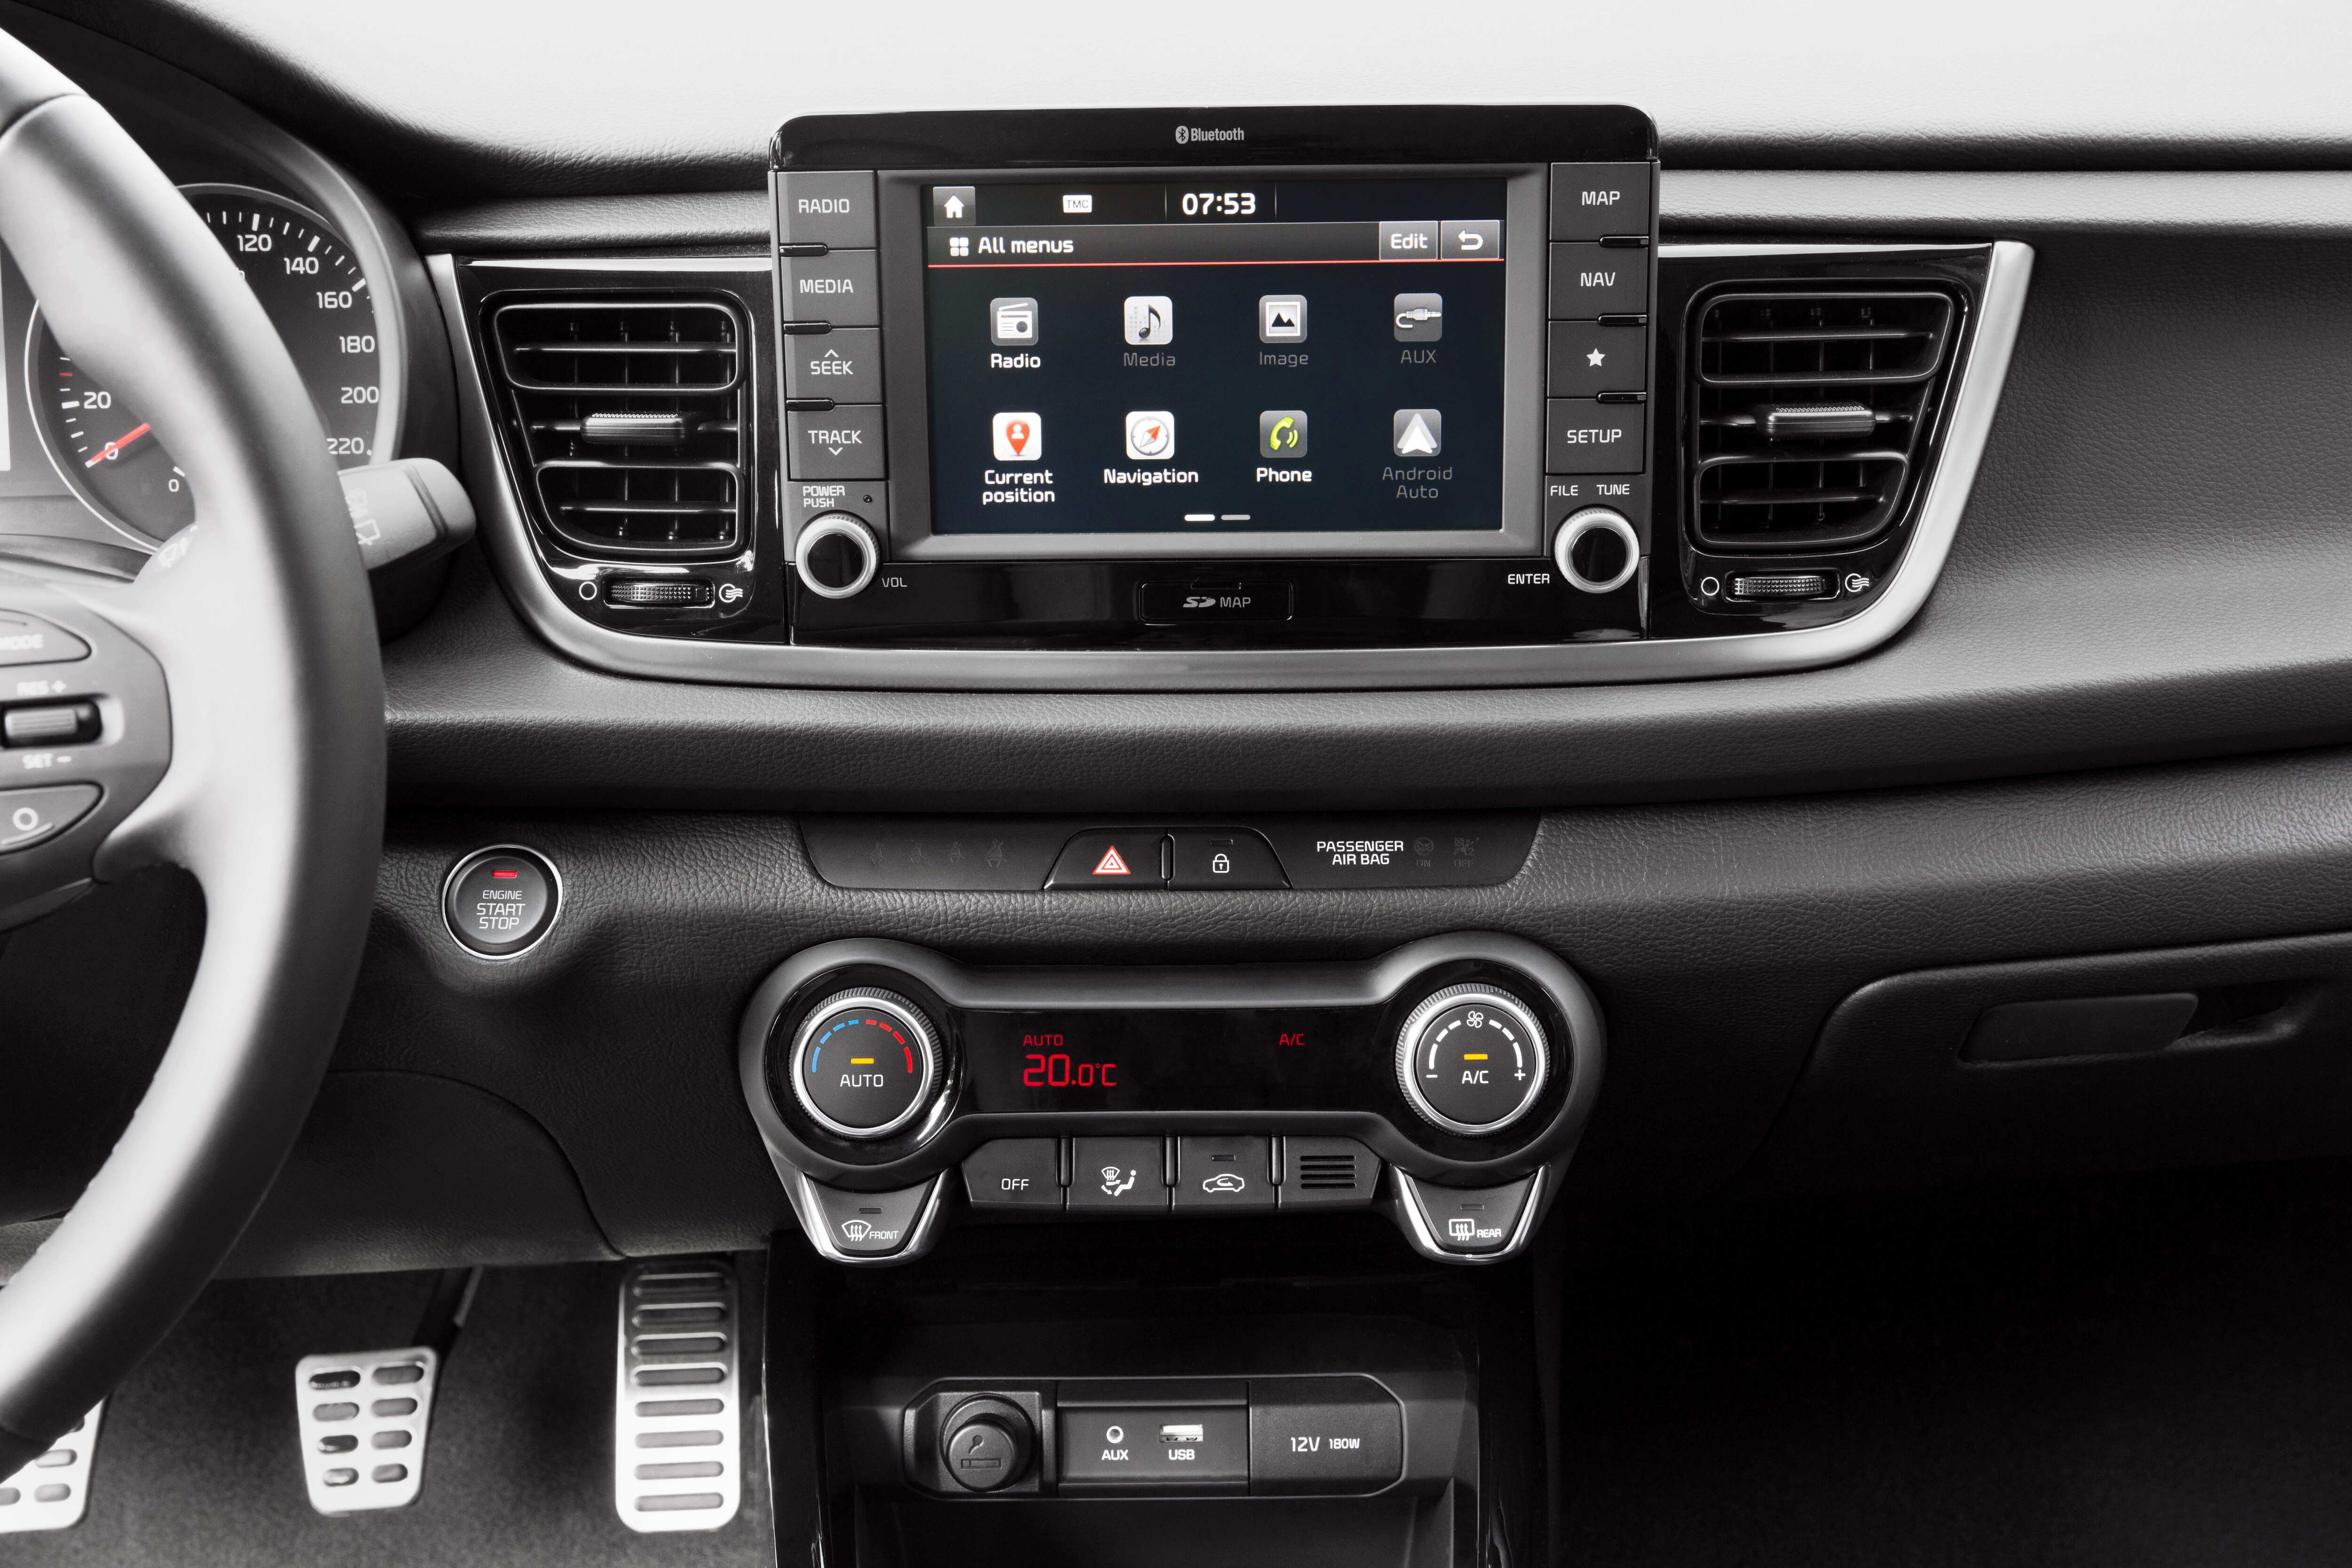 KIA Rio Hatchback interior specifications